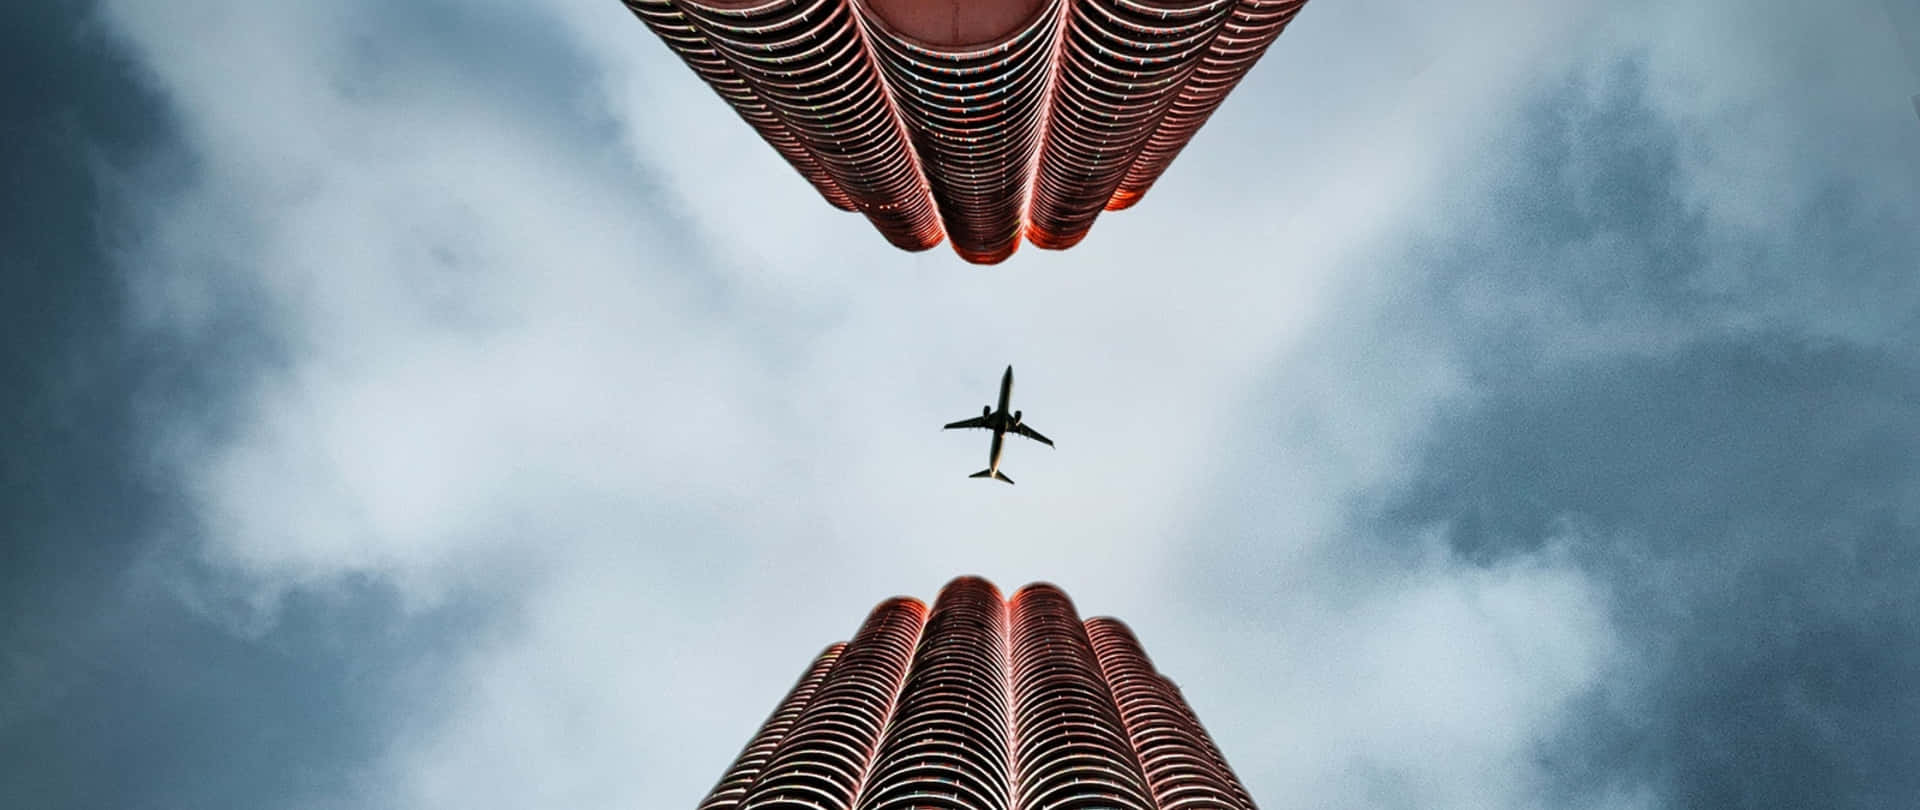 Plane Desktop Between Buildings Wallpaper